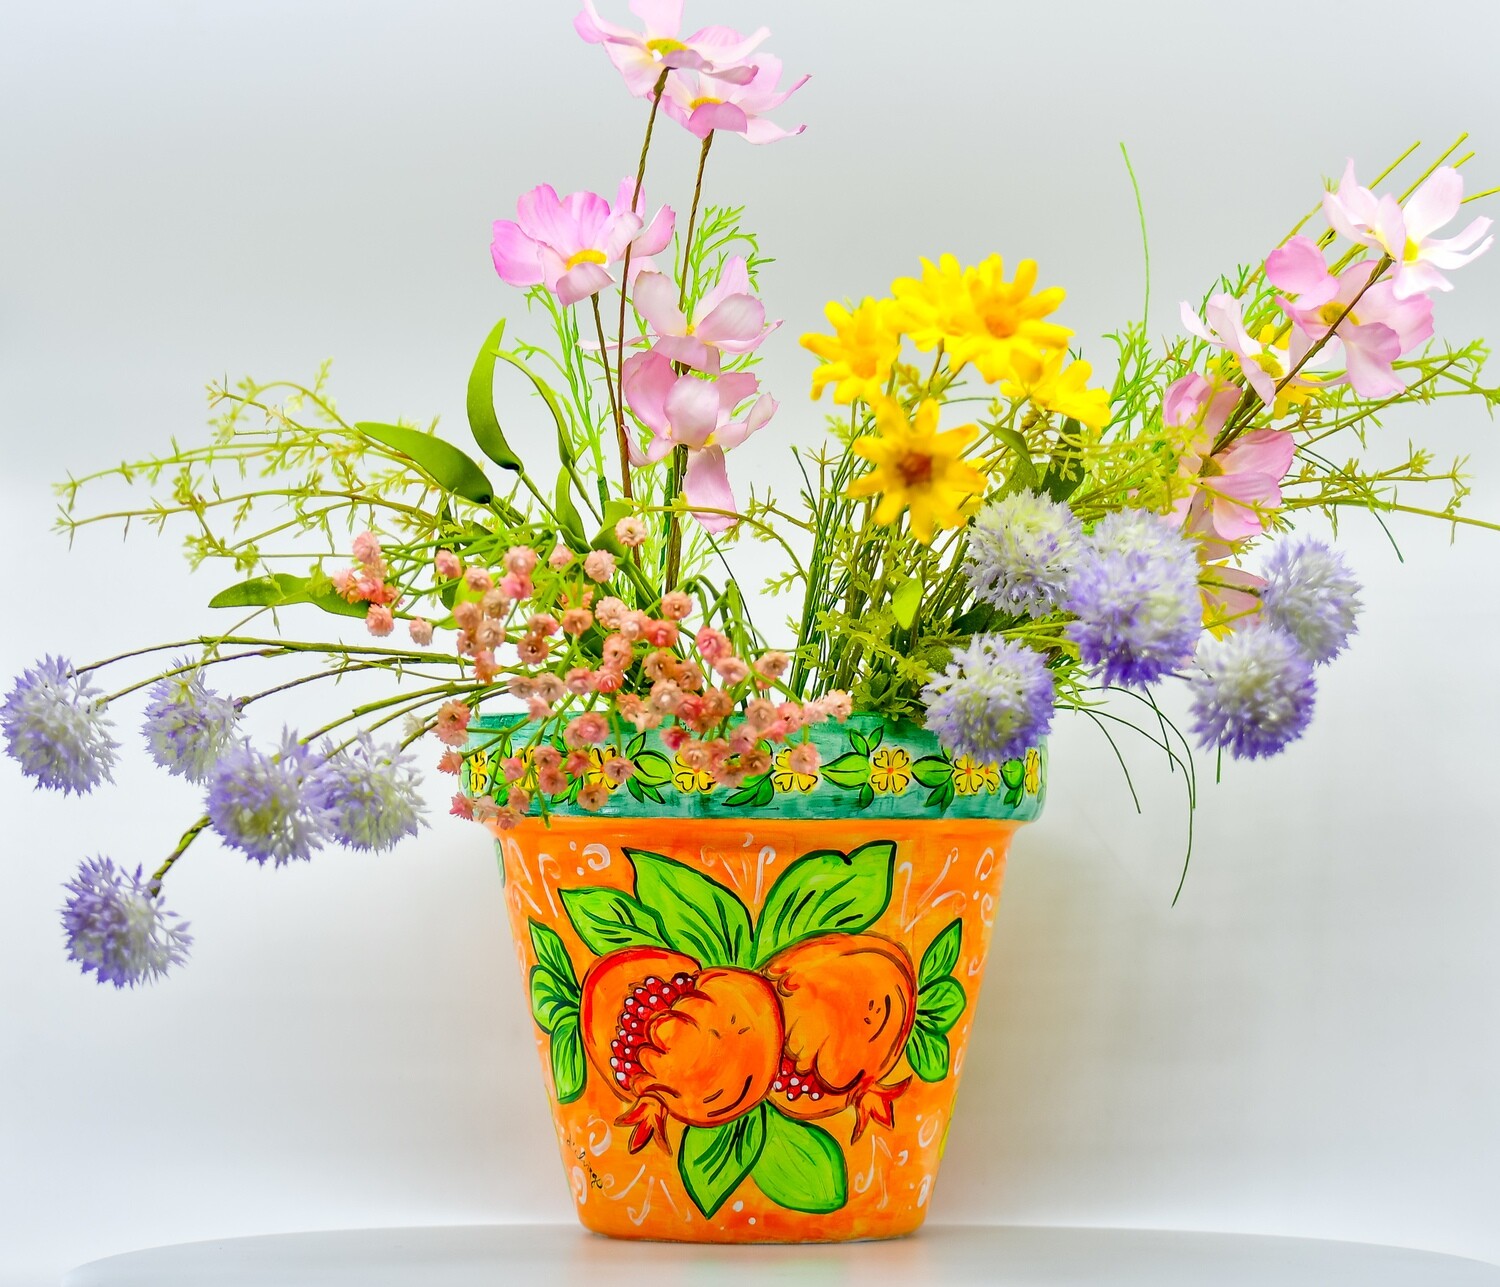 "Melograno di colore arancione" hand painted ceramic planter